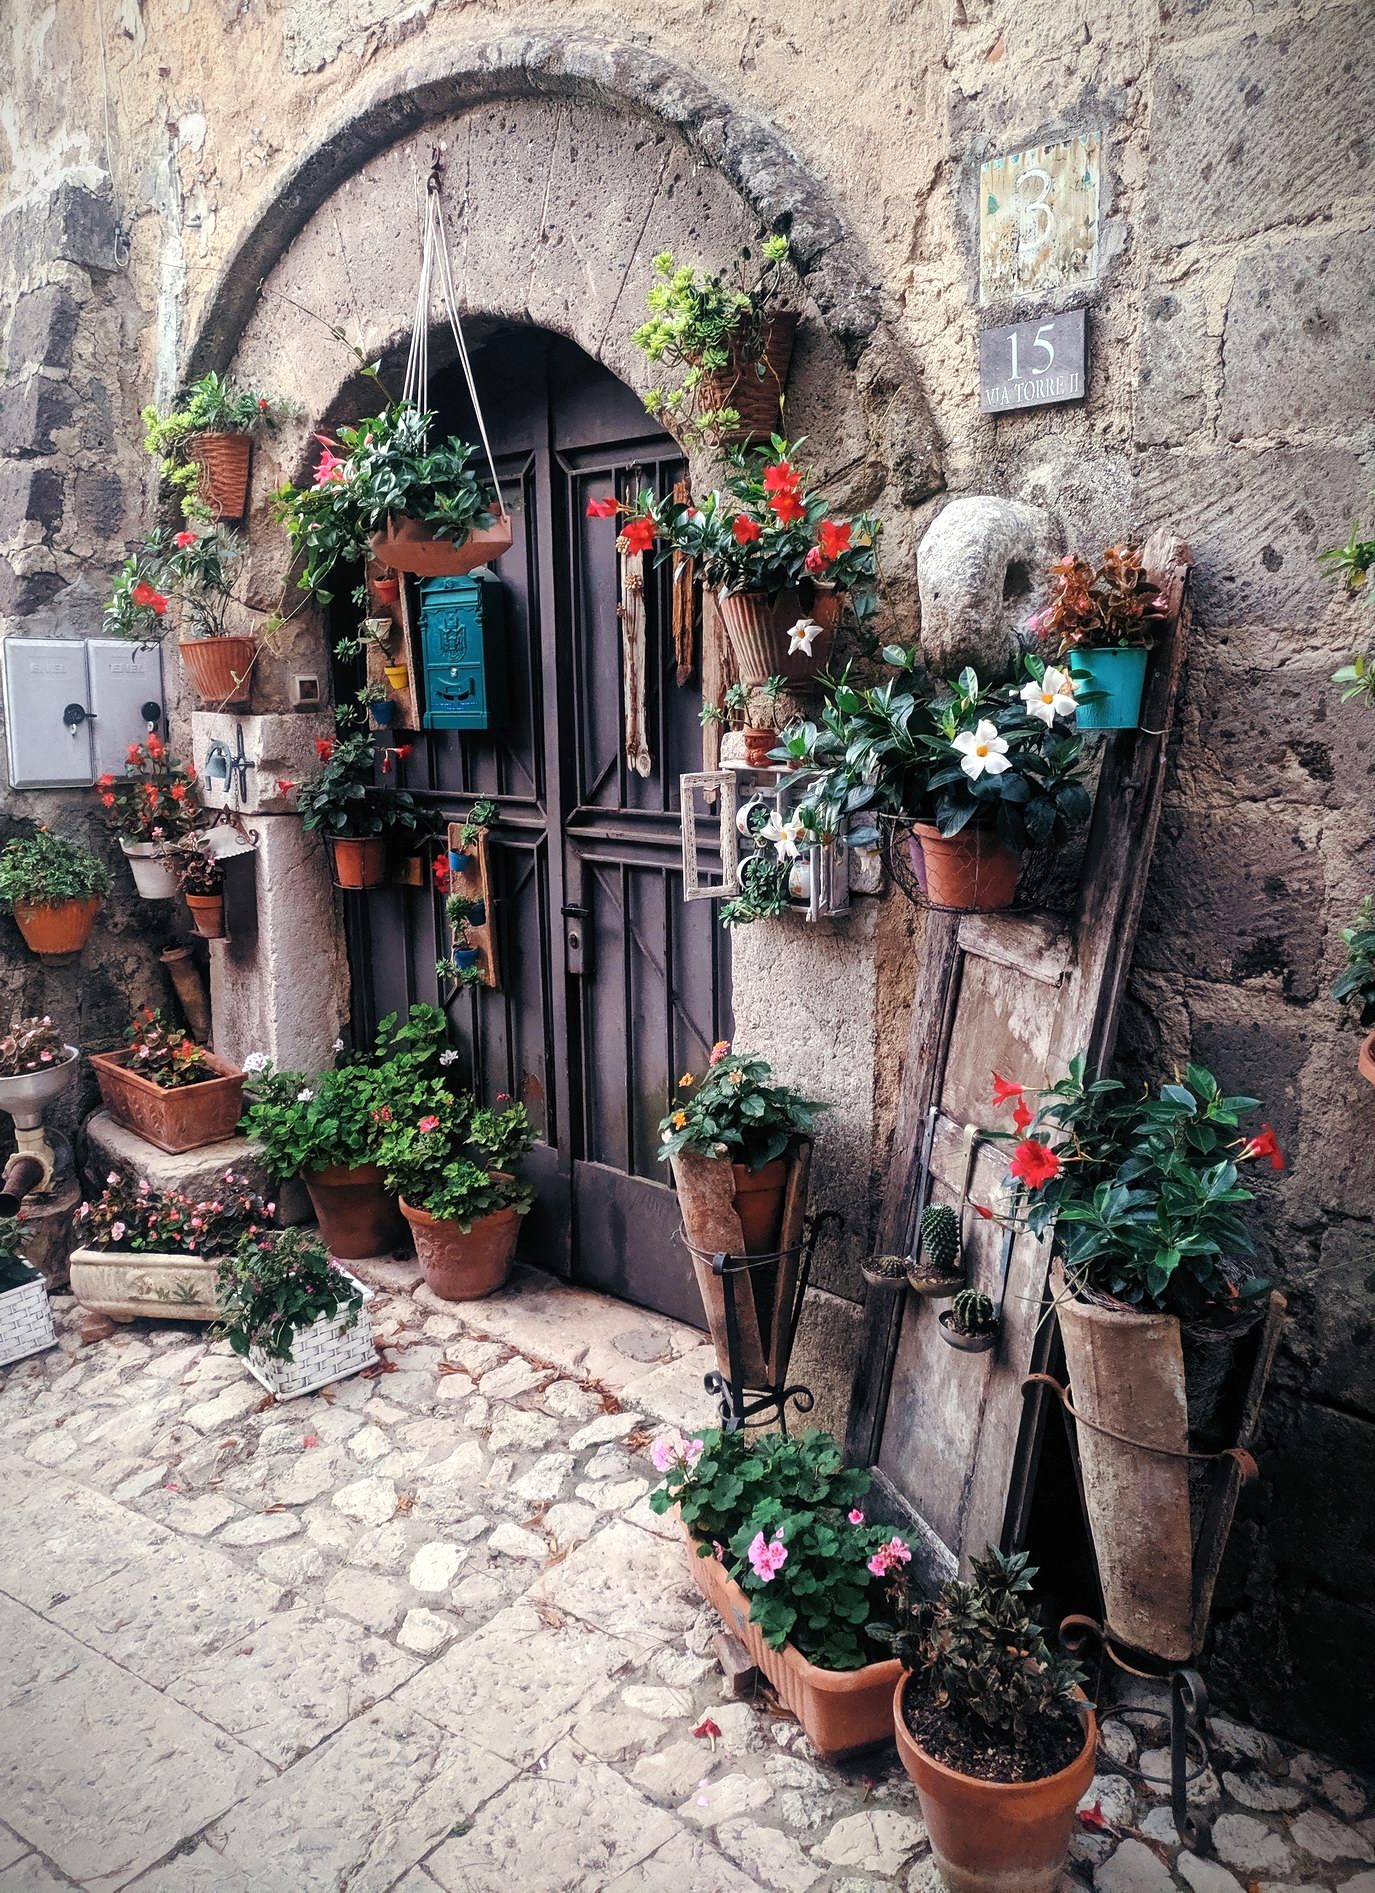 Un pittoresco ingresso al borgo antico (foto Maurizio Cuomo)